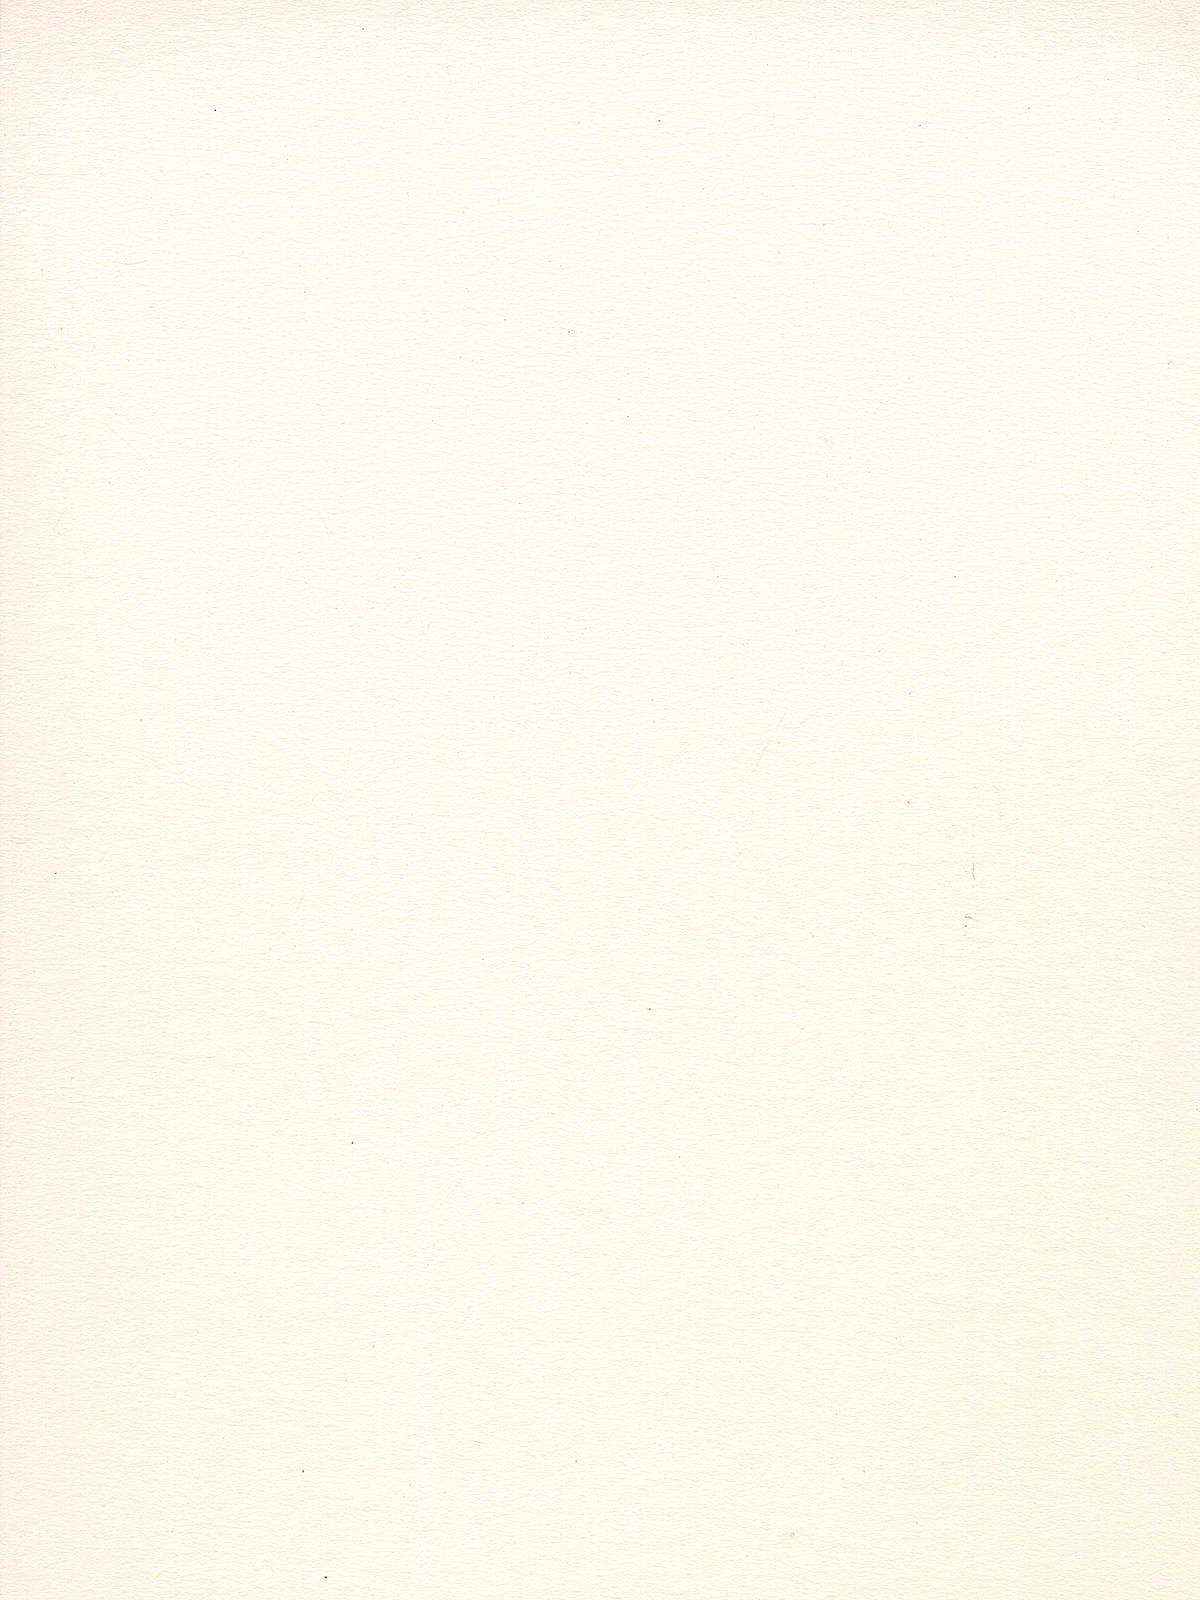 Crescent Illustration Board - 15x20, White, Cold Press, No. 16